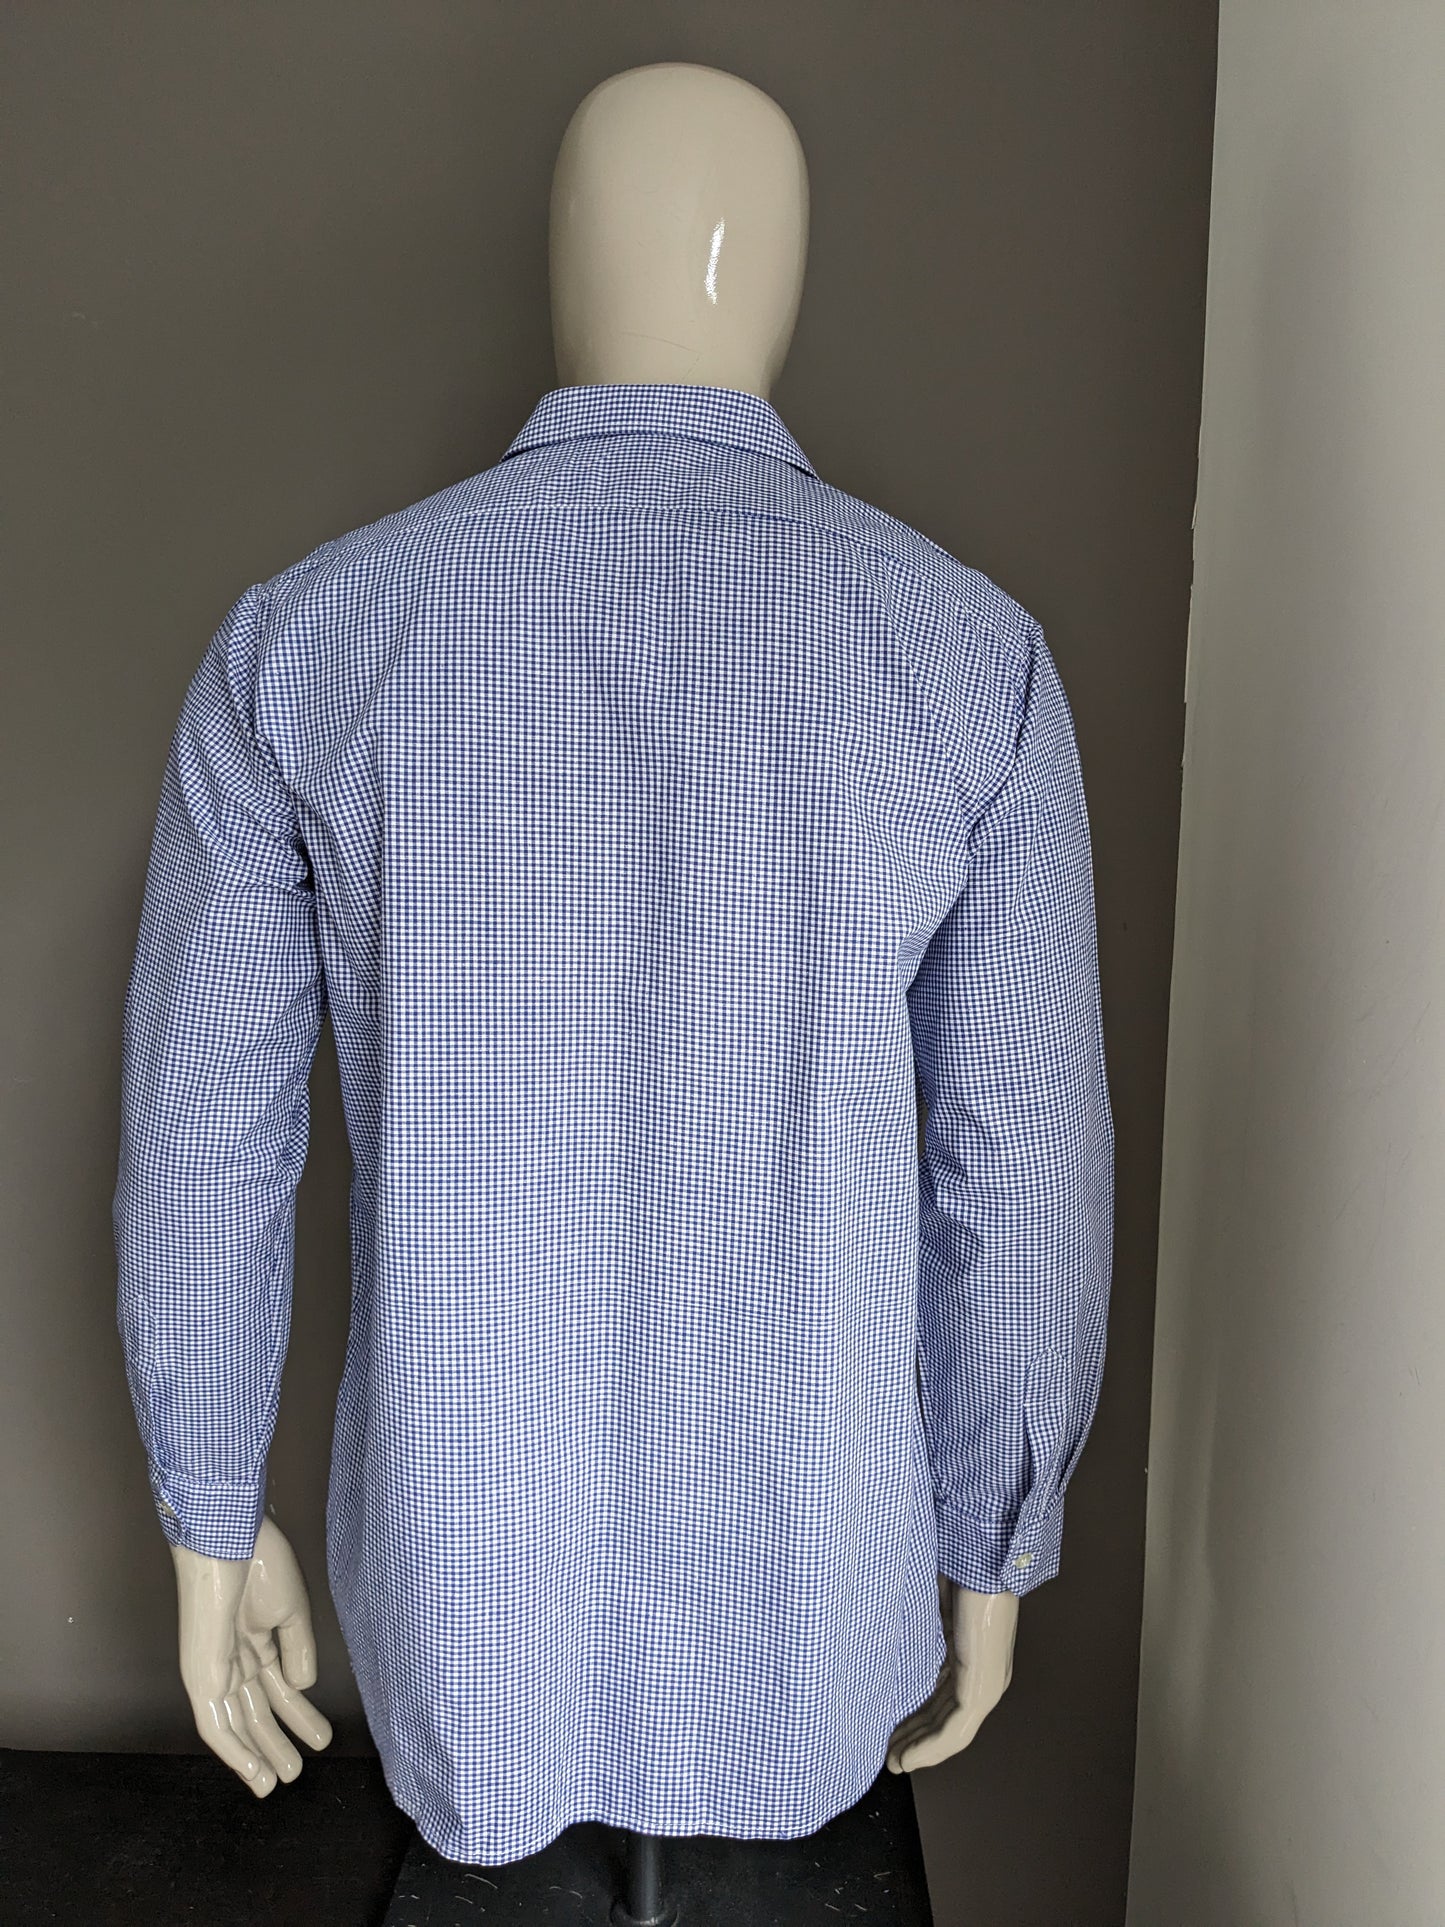 Vintage 70's overhemd. Blauw Wit geblokt motief. Maat L.